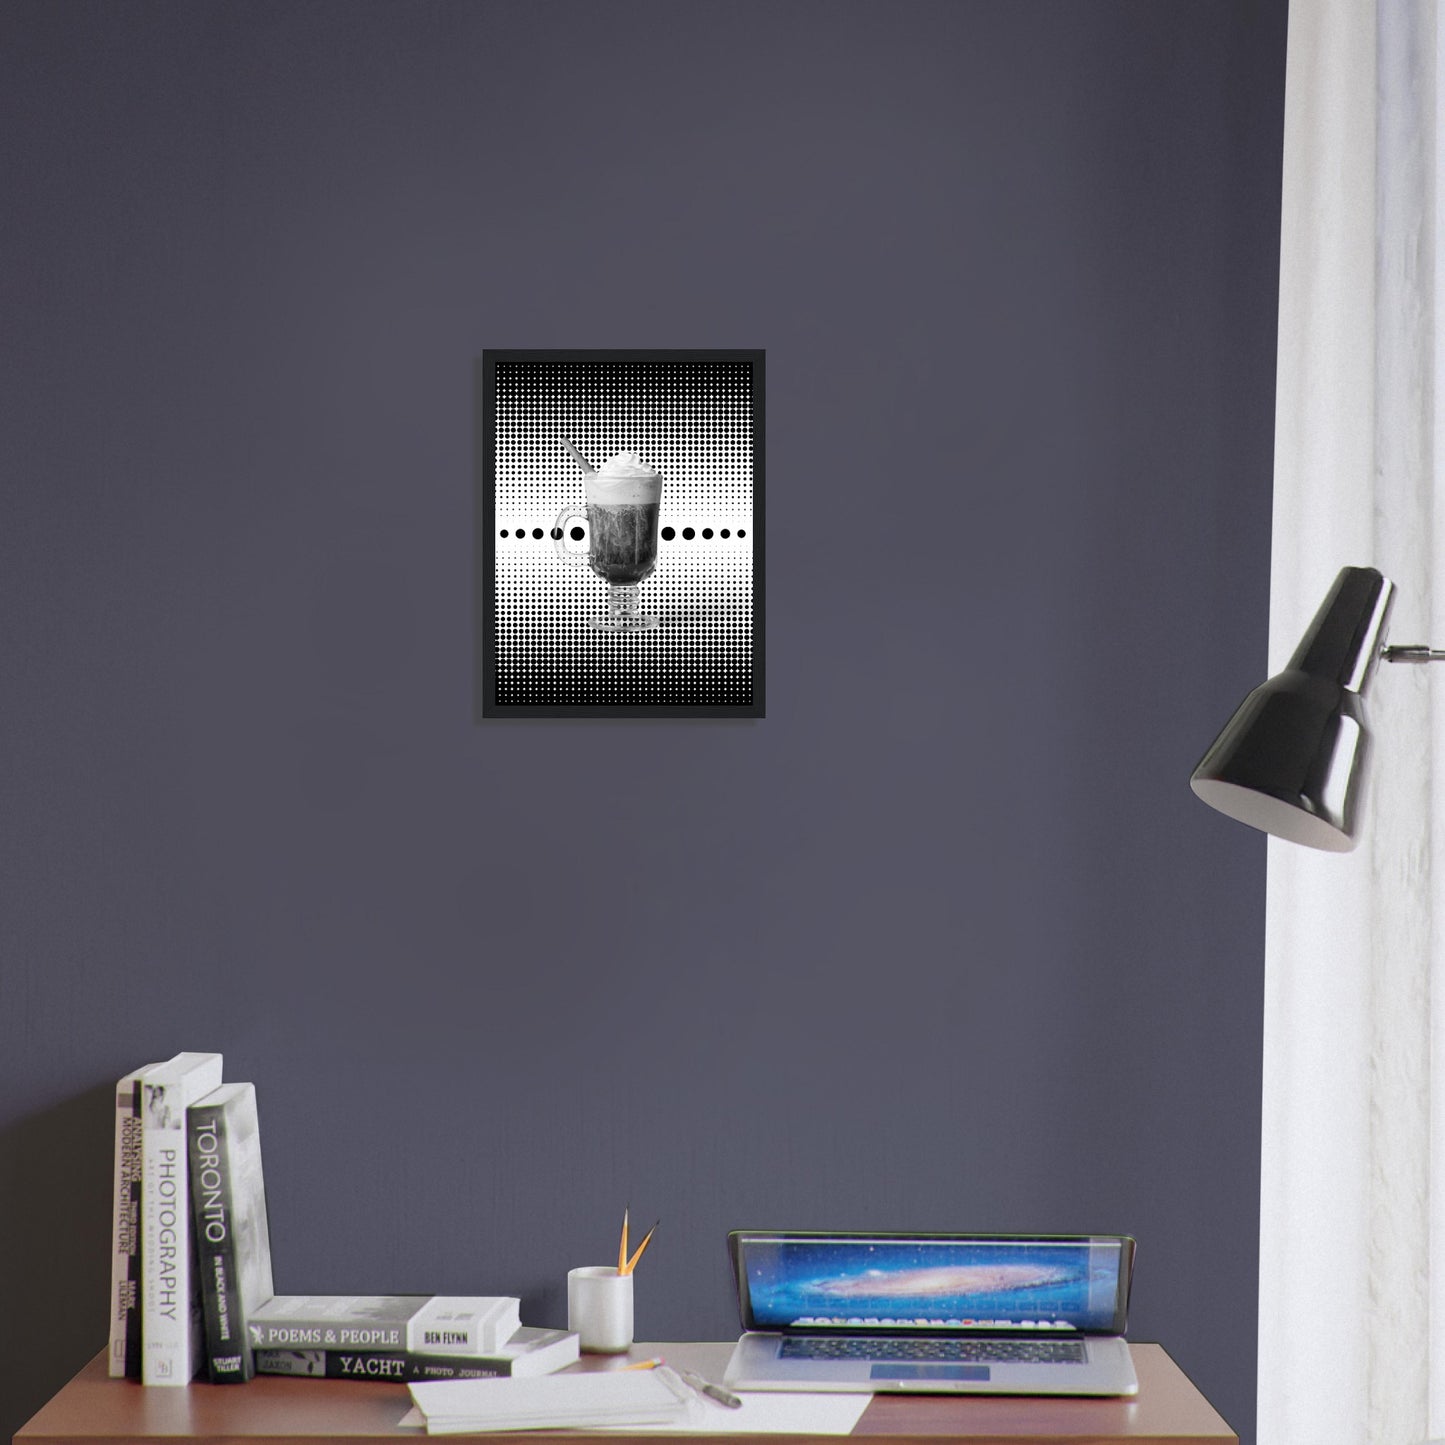 Bild im schwarzem Rahmen mit einem Schwarz weißem Motiv aus schwarzen punkten auf einem weißen Untergrund gepaart eines Schwarzweiß Foto eines Cappuccino über einem Schreibtisch an der Wand.